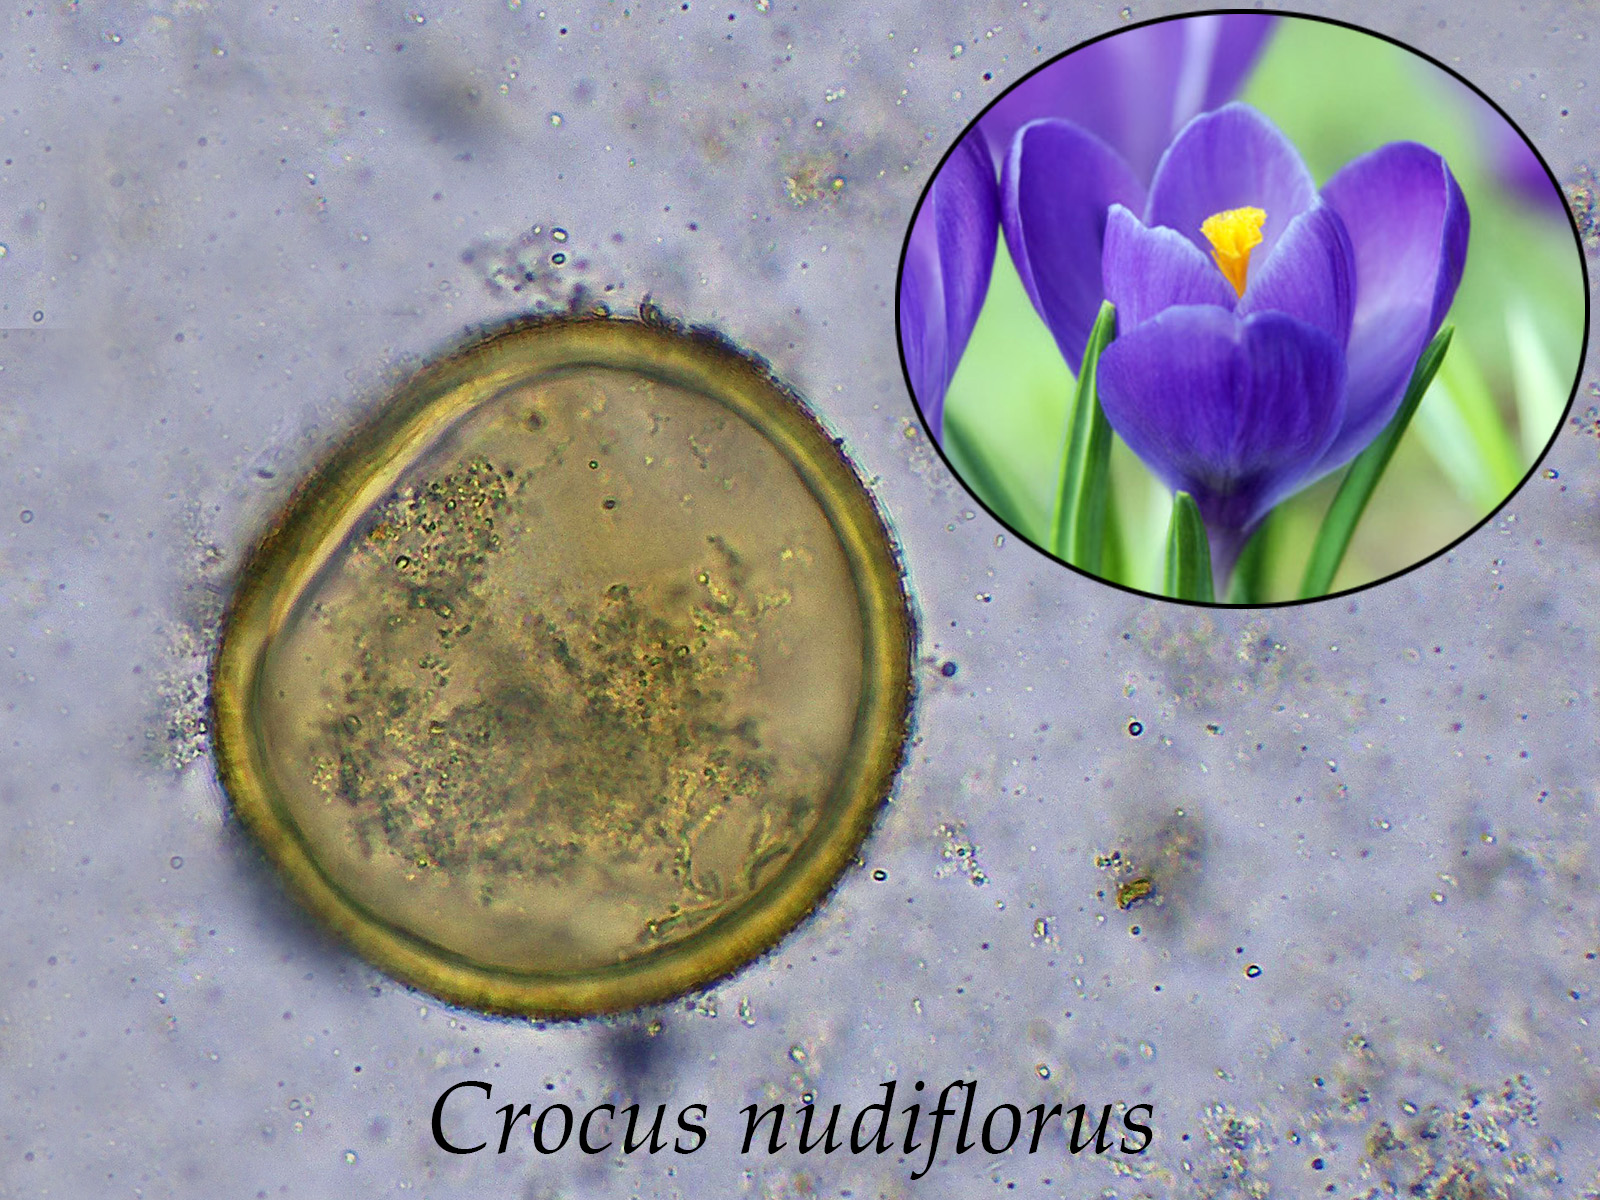 Crocusnudiflorus.jpg